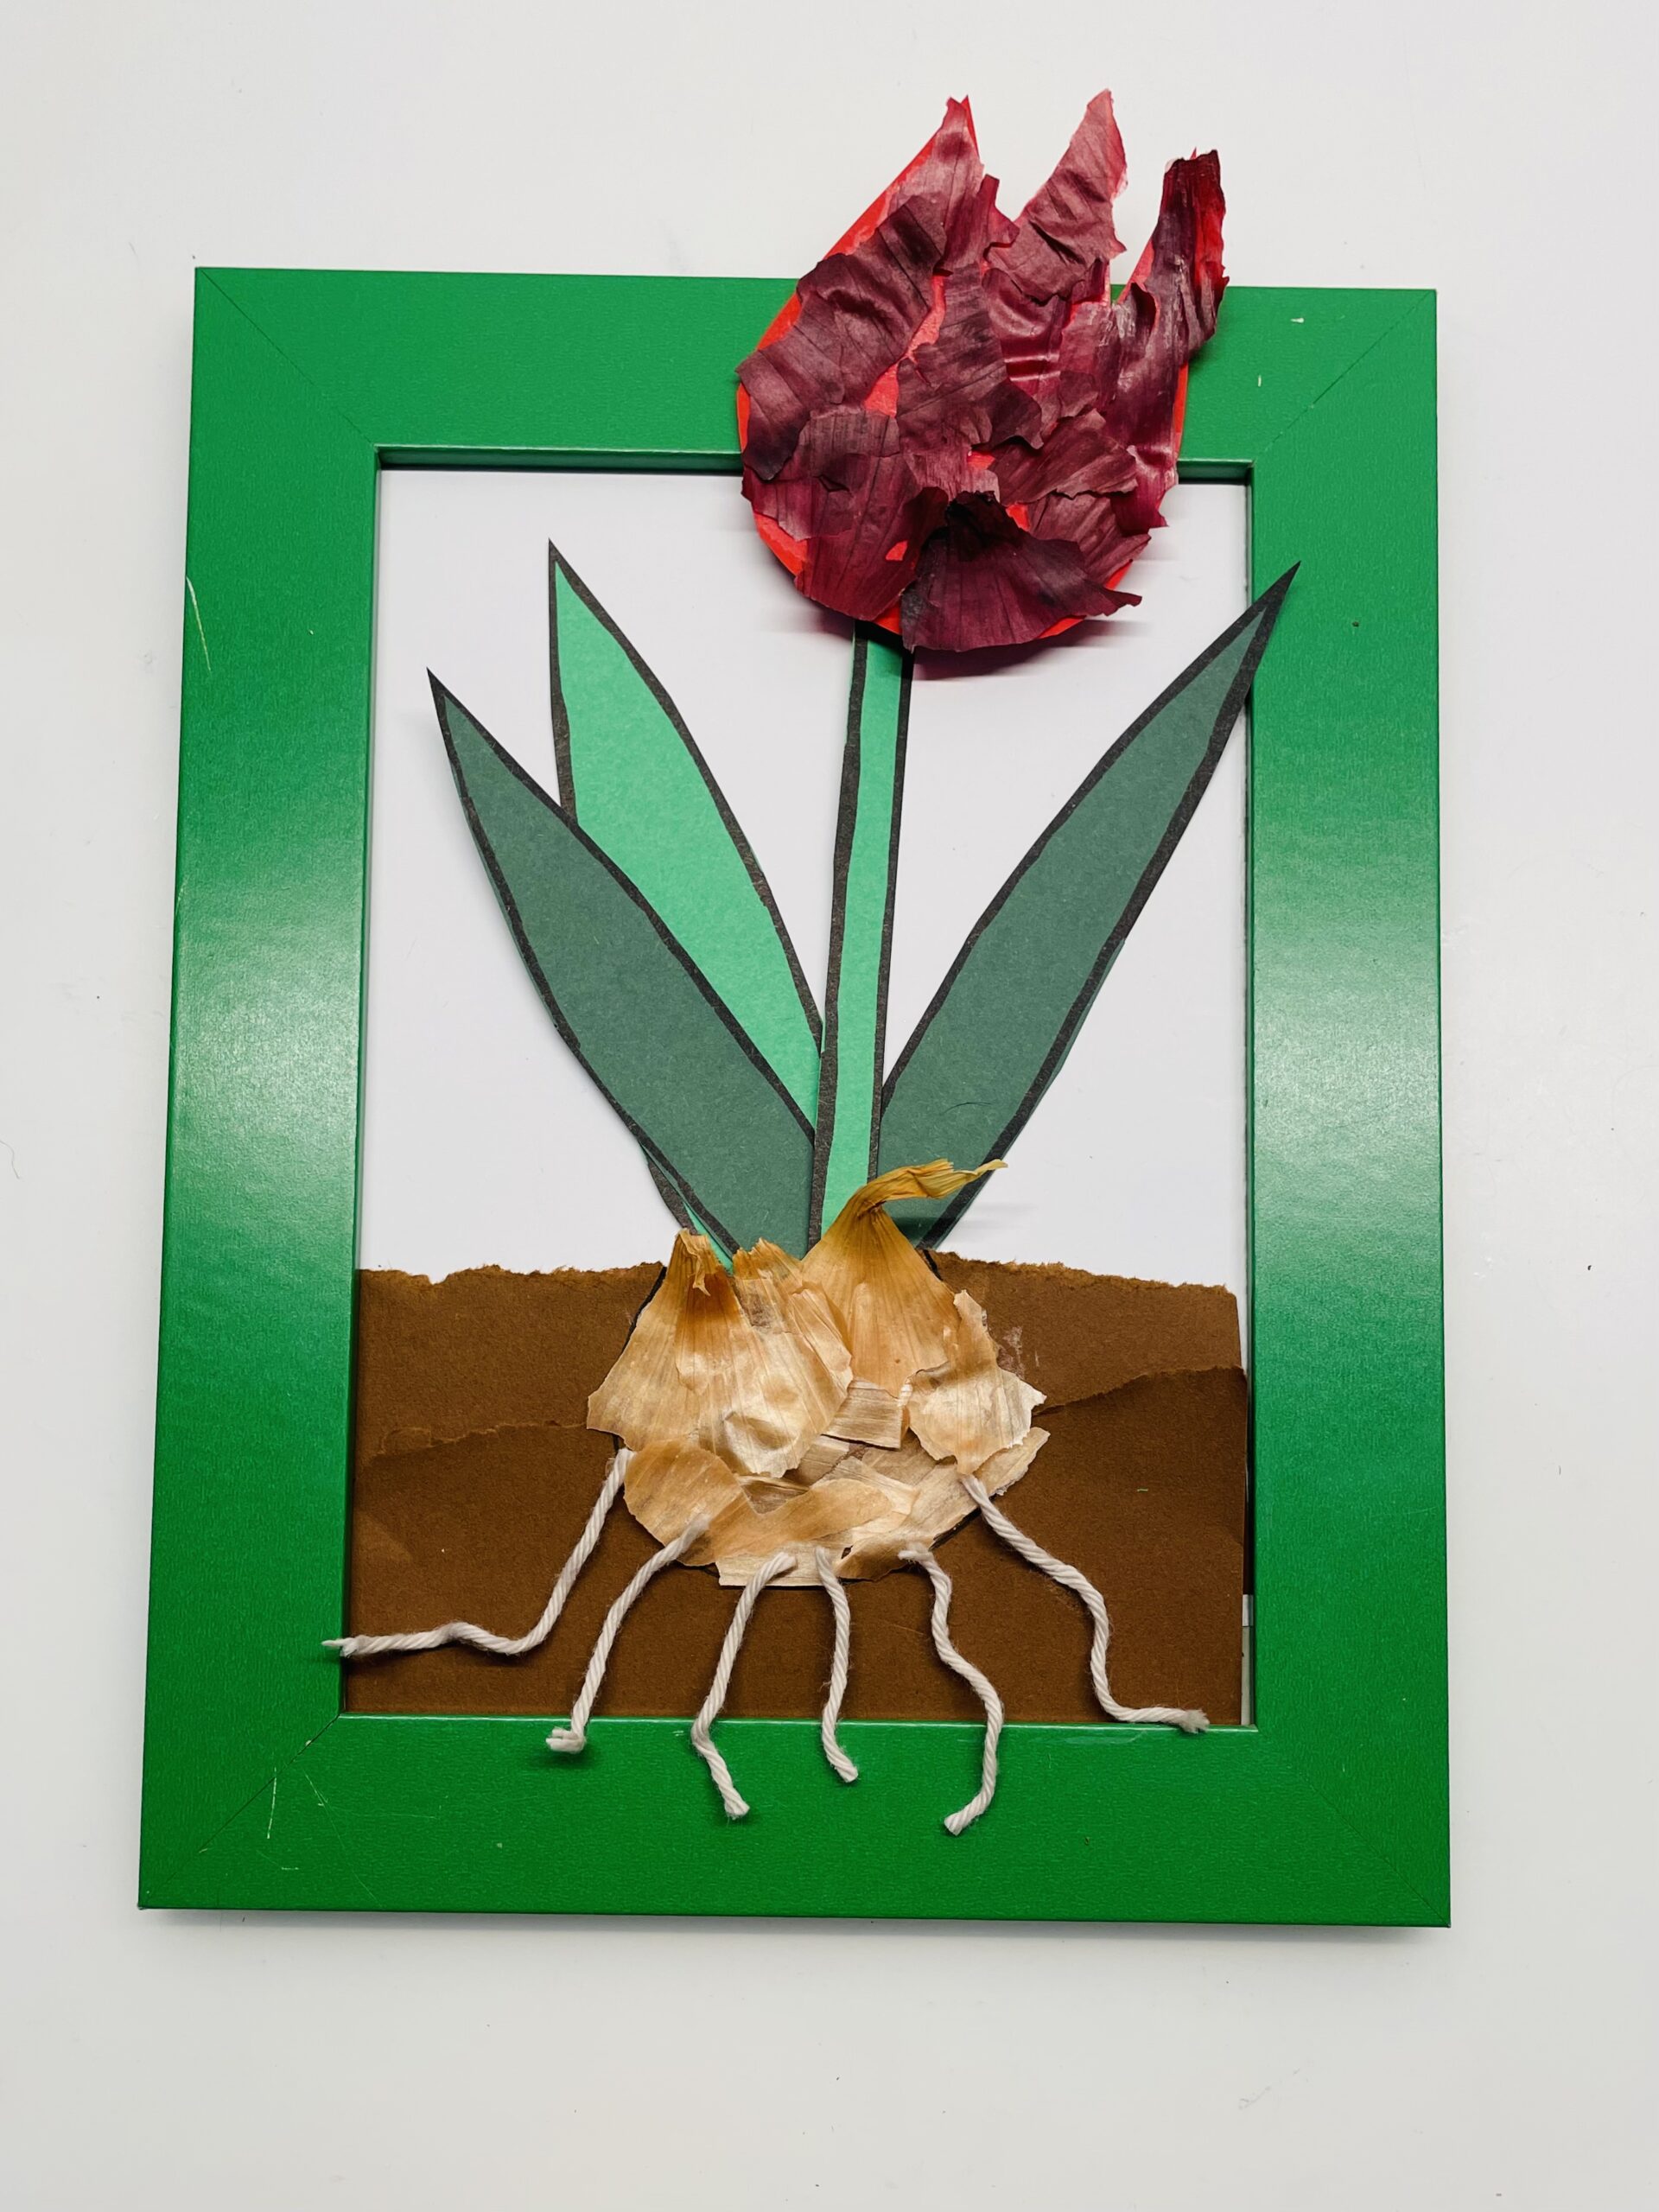 Bild zum Schritt 14 für das Bastel- und DIY-Abenteuer für Kinder: 'Fertig ist deine Tulpe mit Zwiebelschalen.'